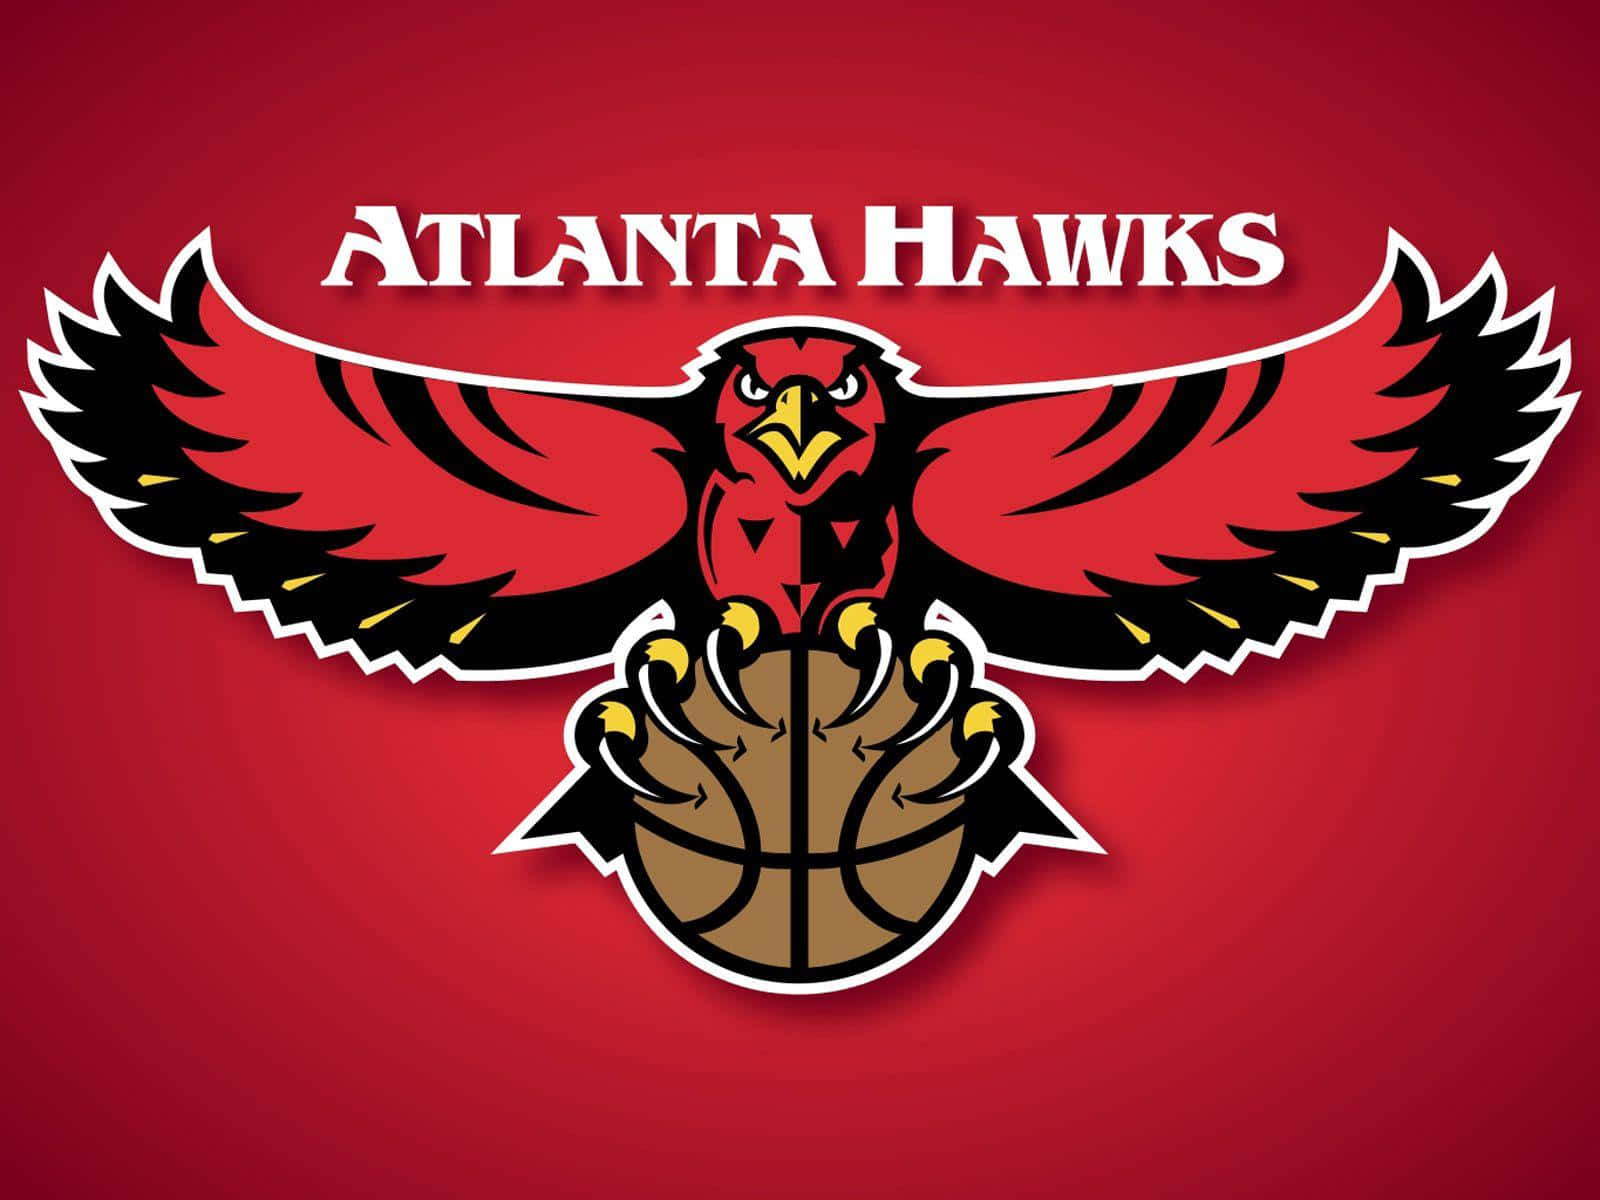 Visdin Støtte Til Atlanta Hawks!